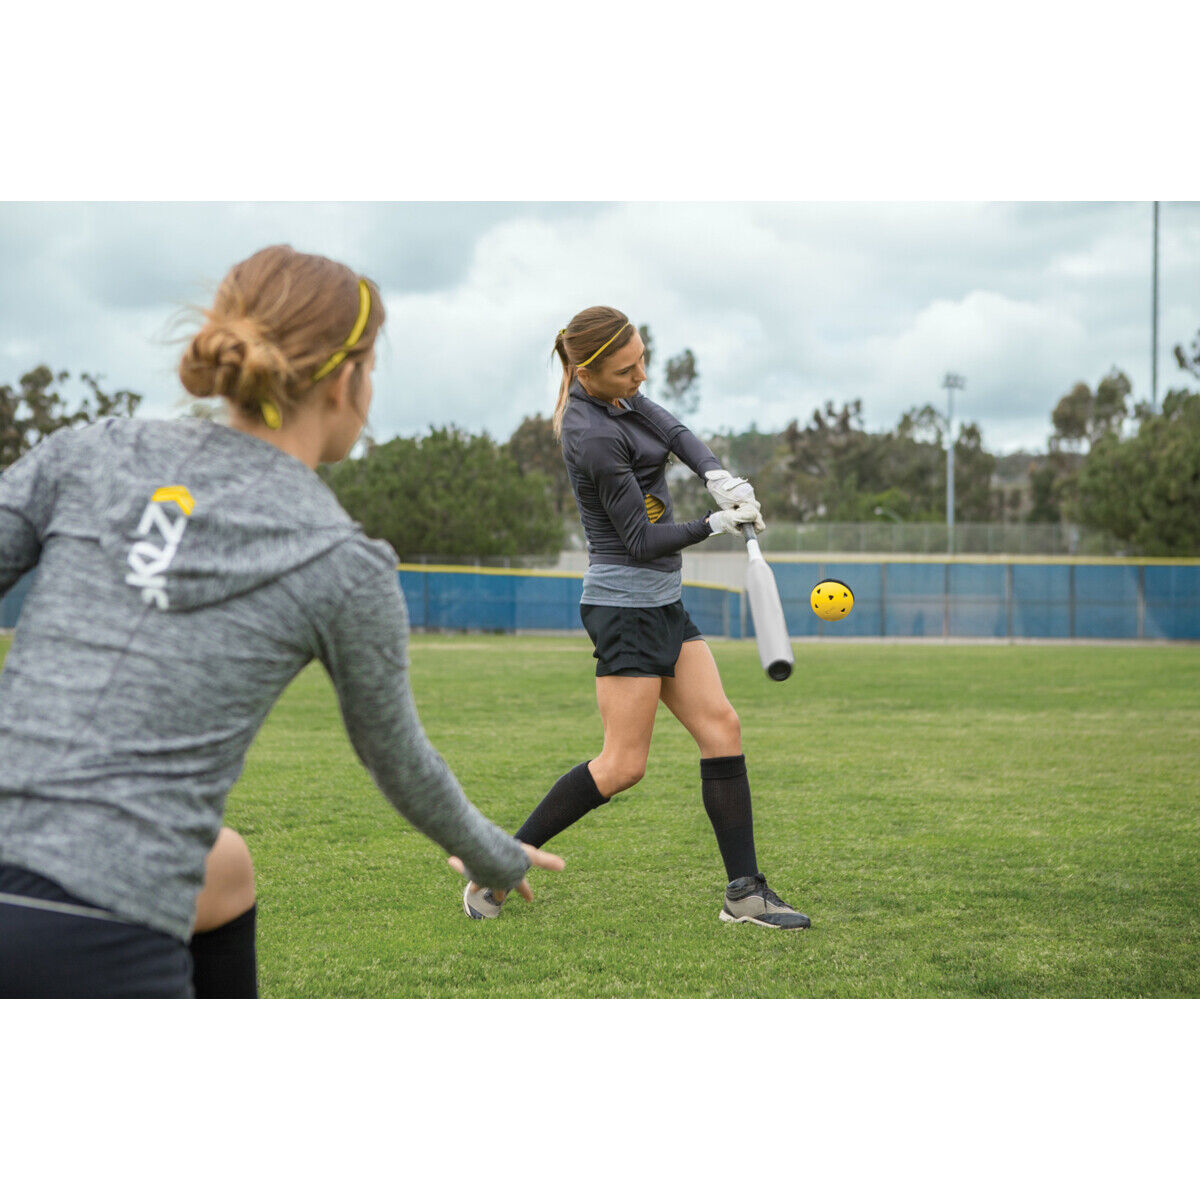 Impact Training Softballbälle – 11 Zoll – 8 Stück